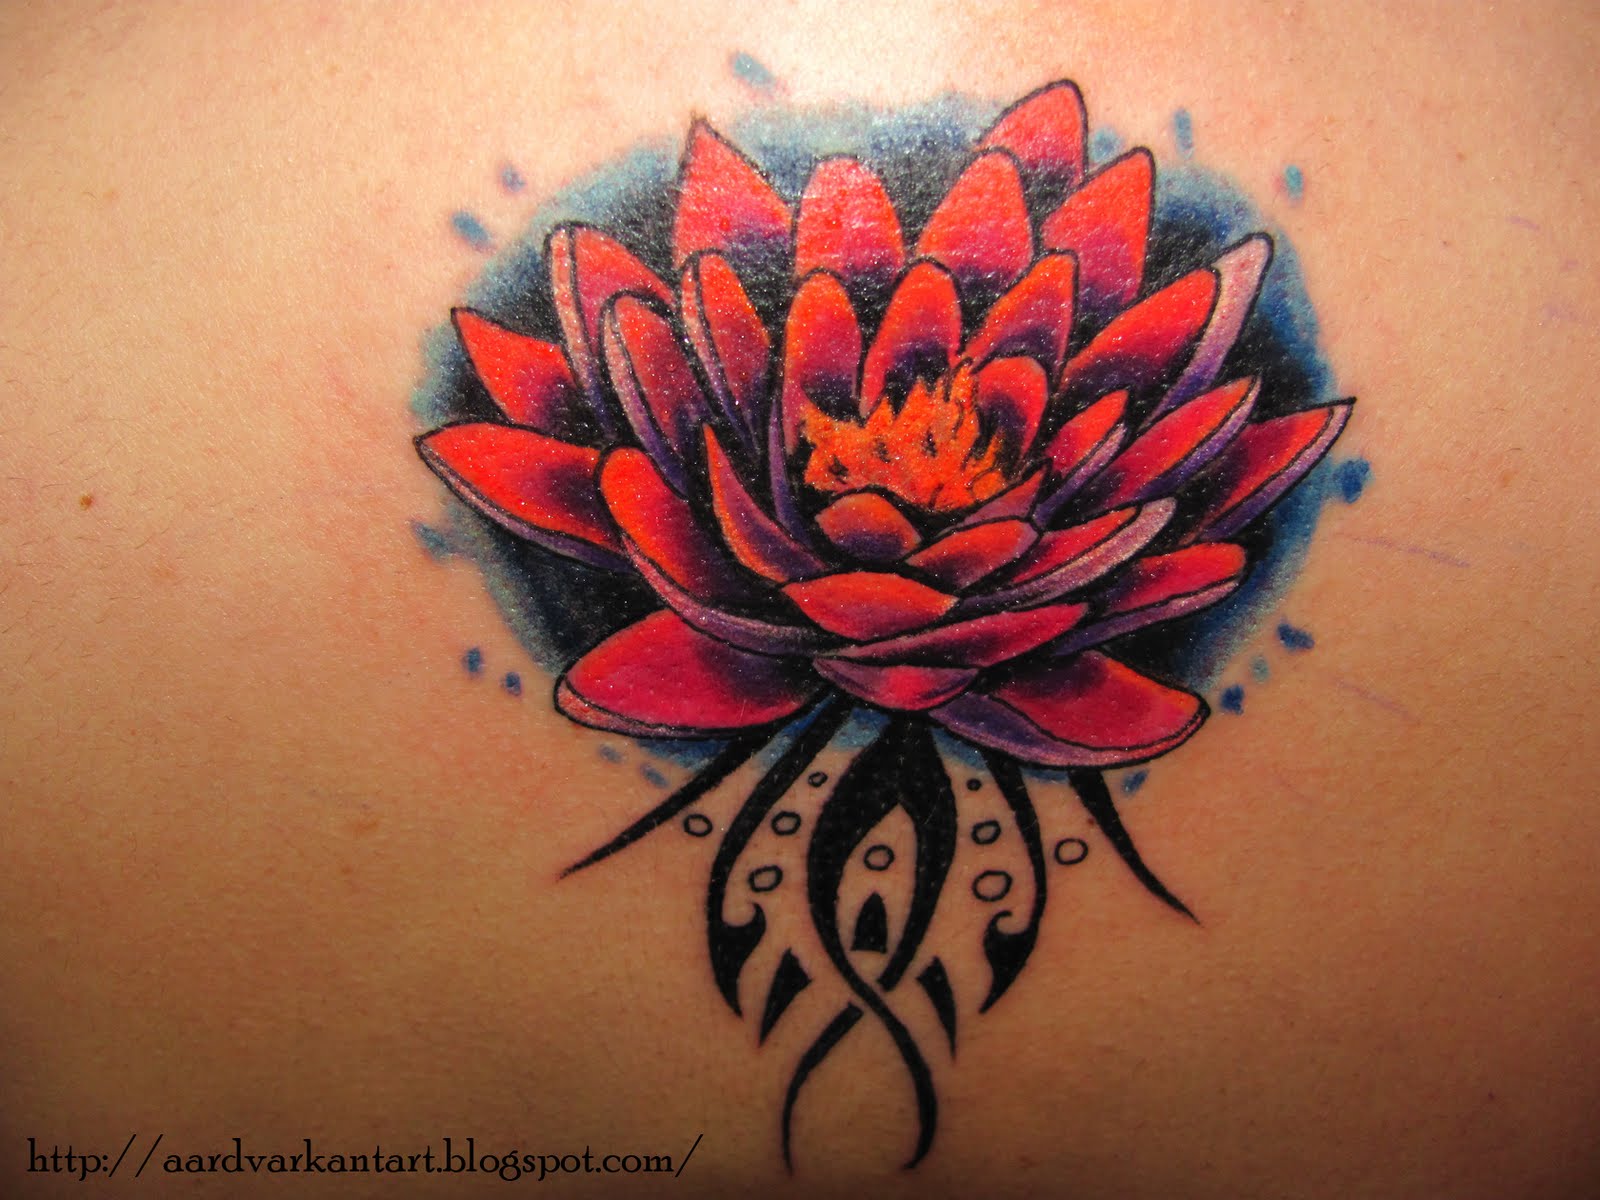 http://3.bp.blogspot.com/-4oqMabKk_3s/Tc3fXiu-GGI/AAAAAAAAAOo/0Ax4ilVWddw/s1600/lotus+flower+tattoo.jpg